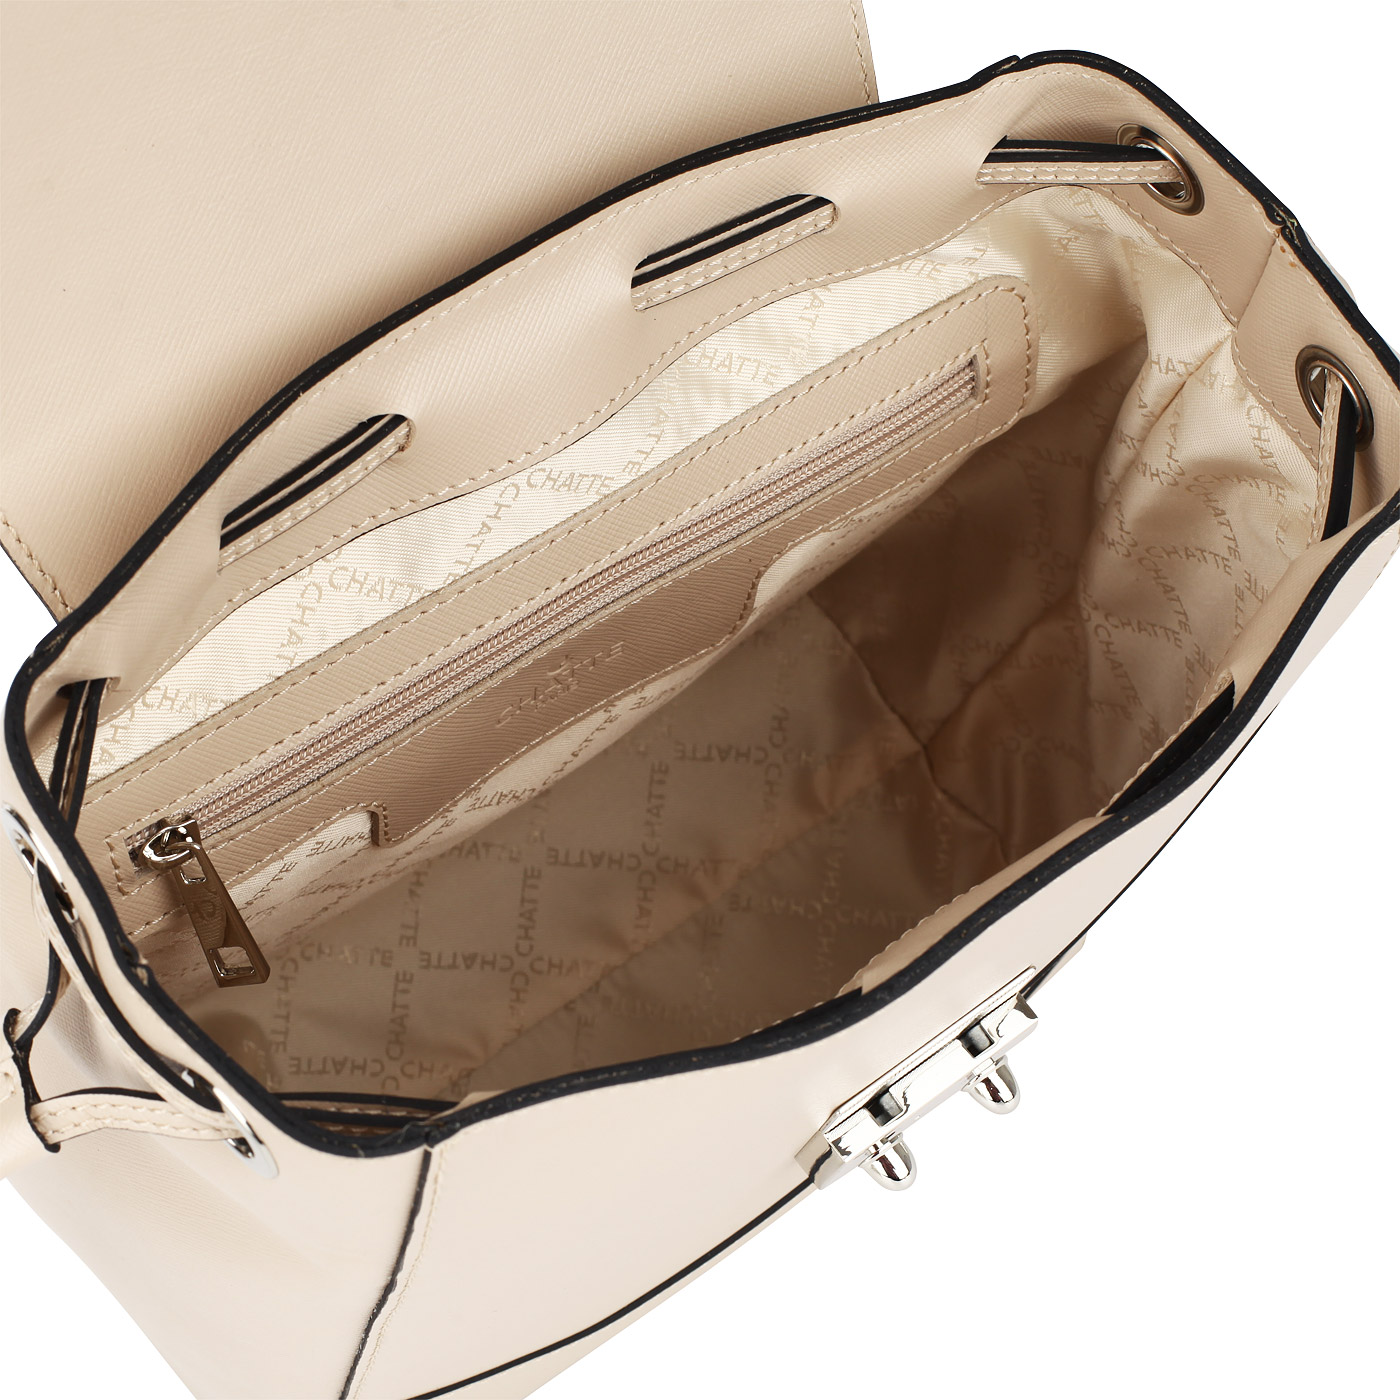 Кожаный рюкзак Chatte 